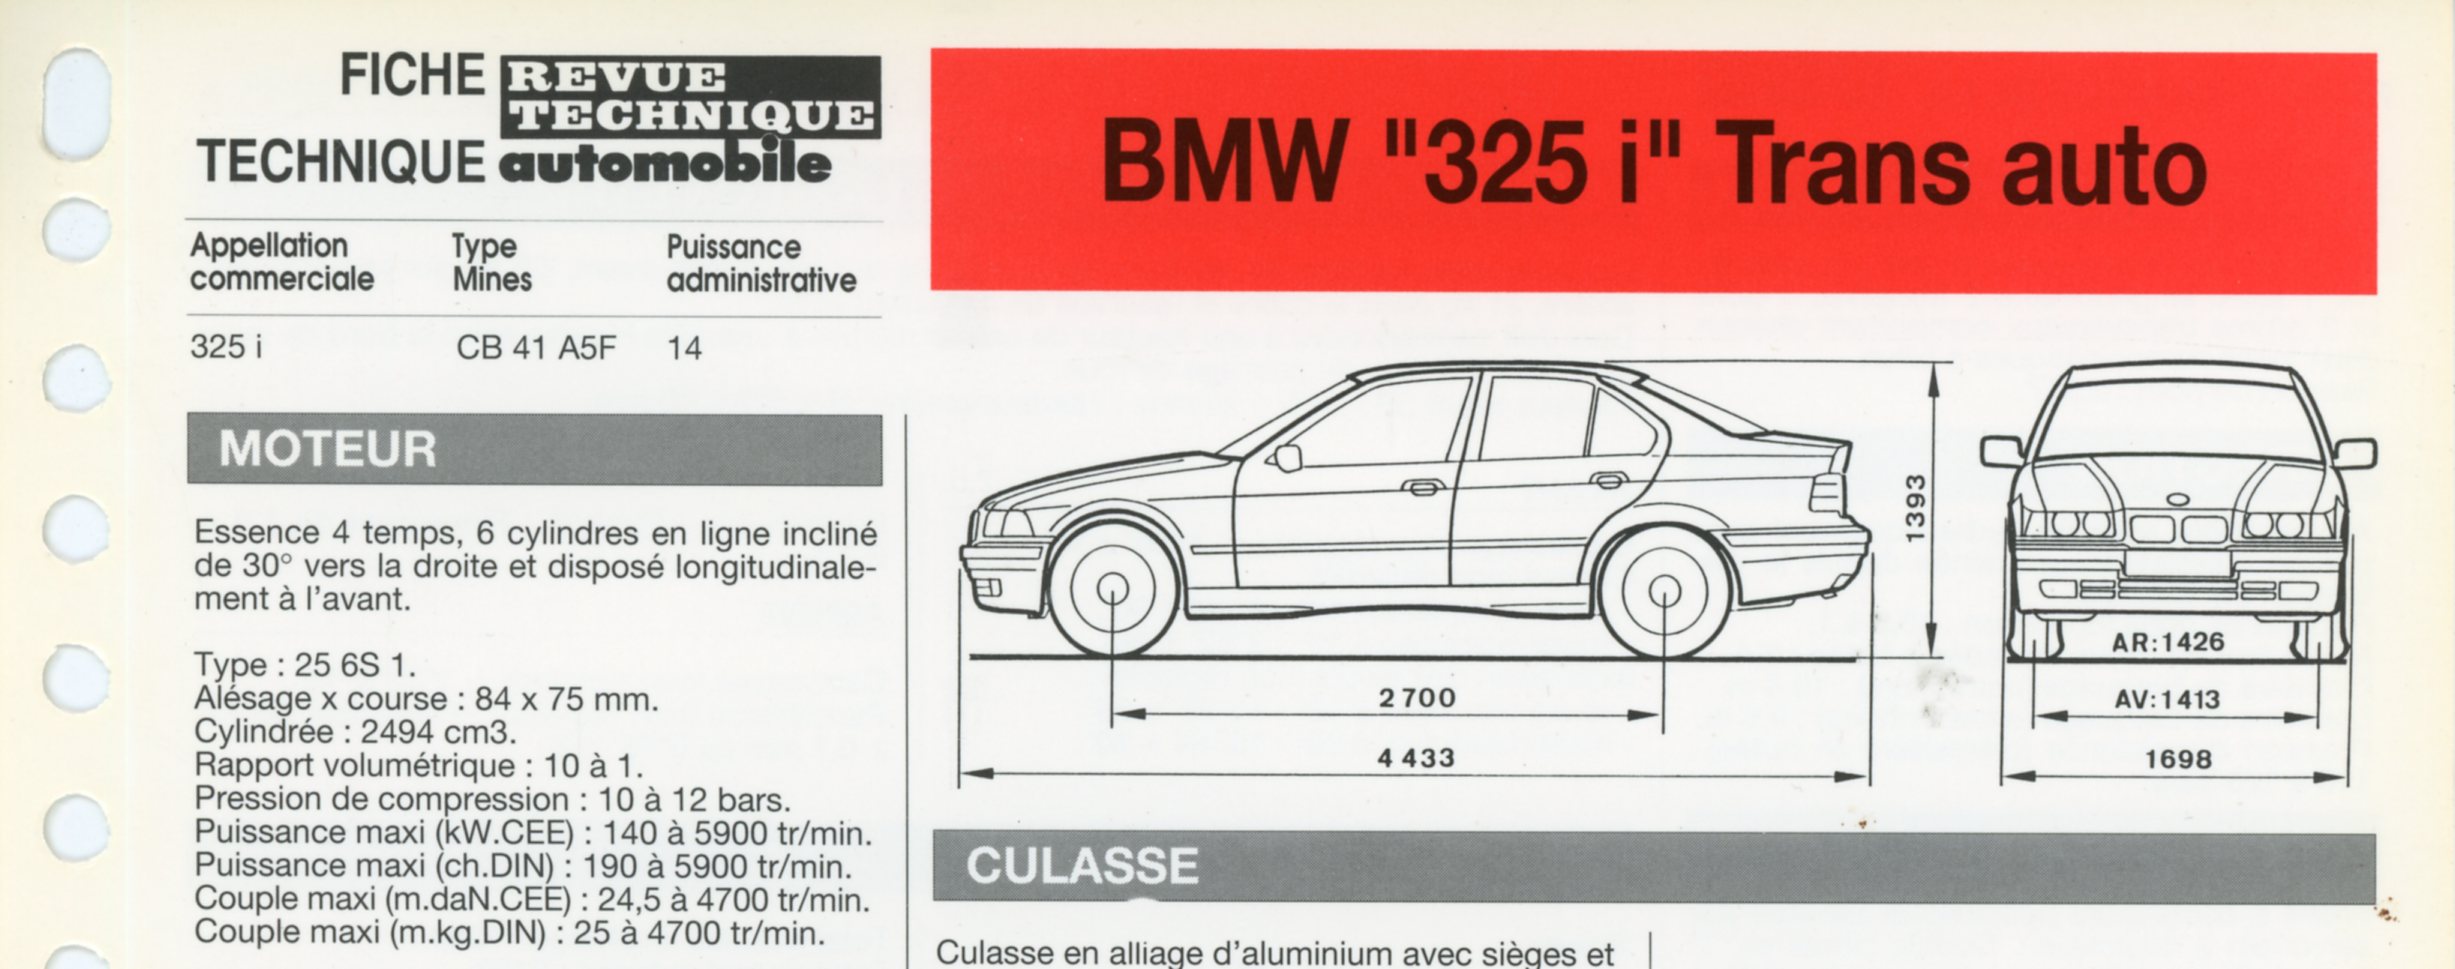 FICHE TECHNIQUE BMW 325i TRANS AUTO - FICHE RTA AUTOMOBILE 1992